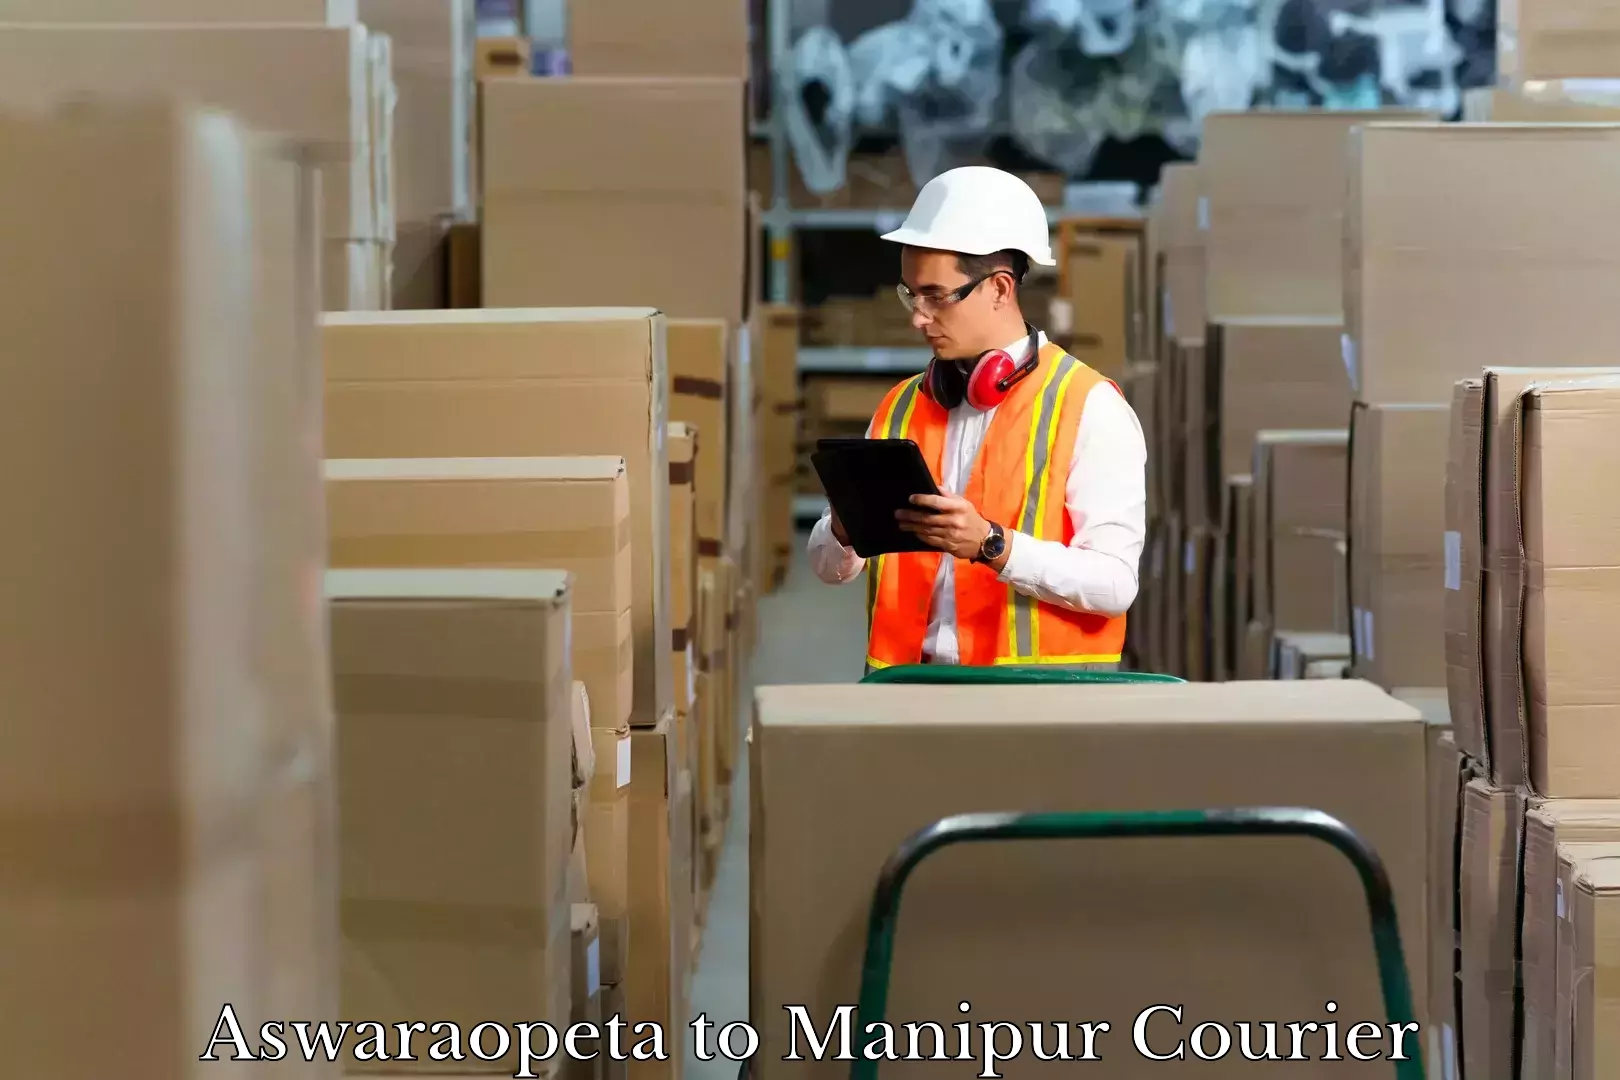 Luggage transport service Aswaraopeta to Manipur